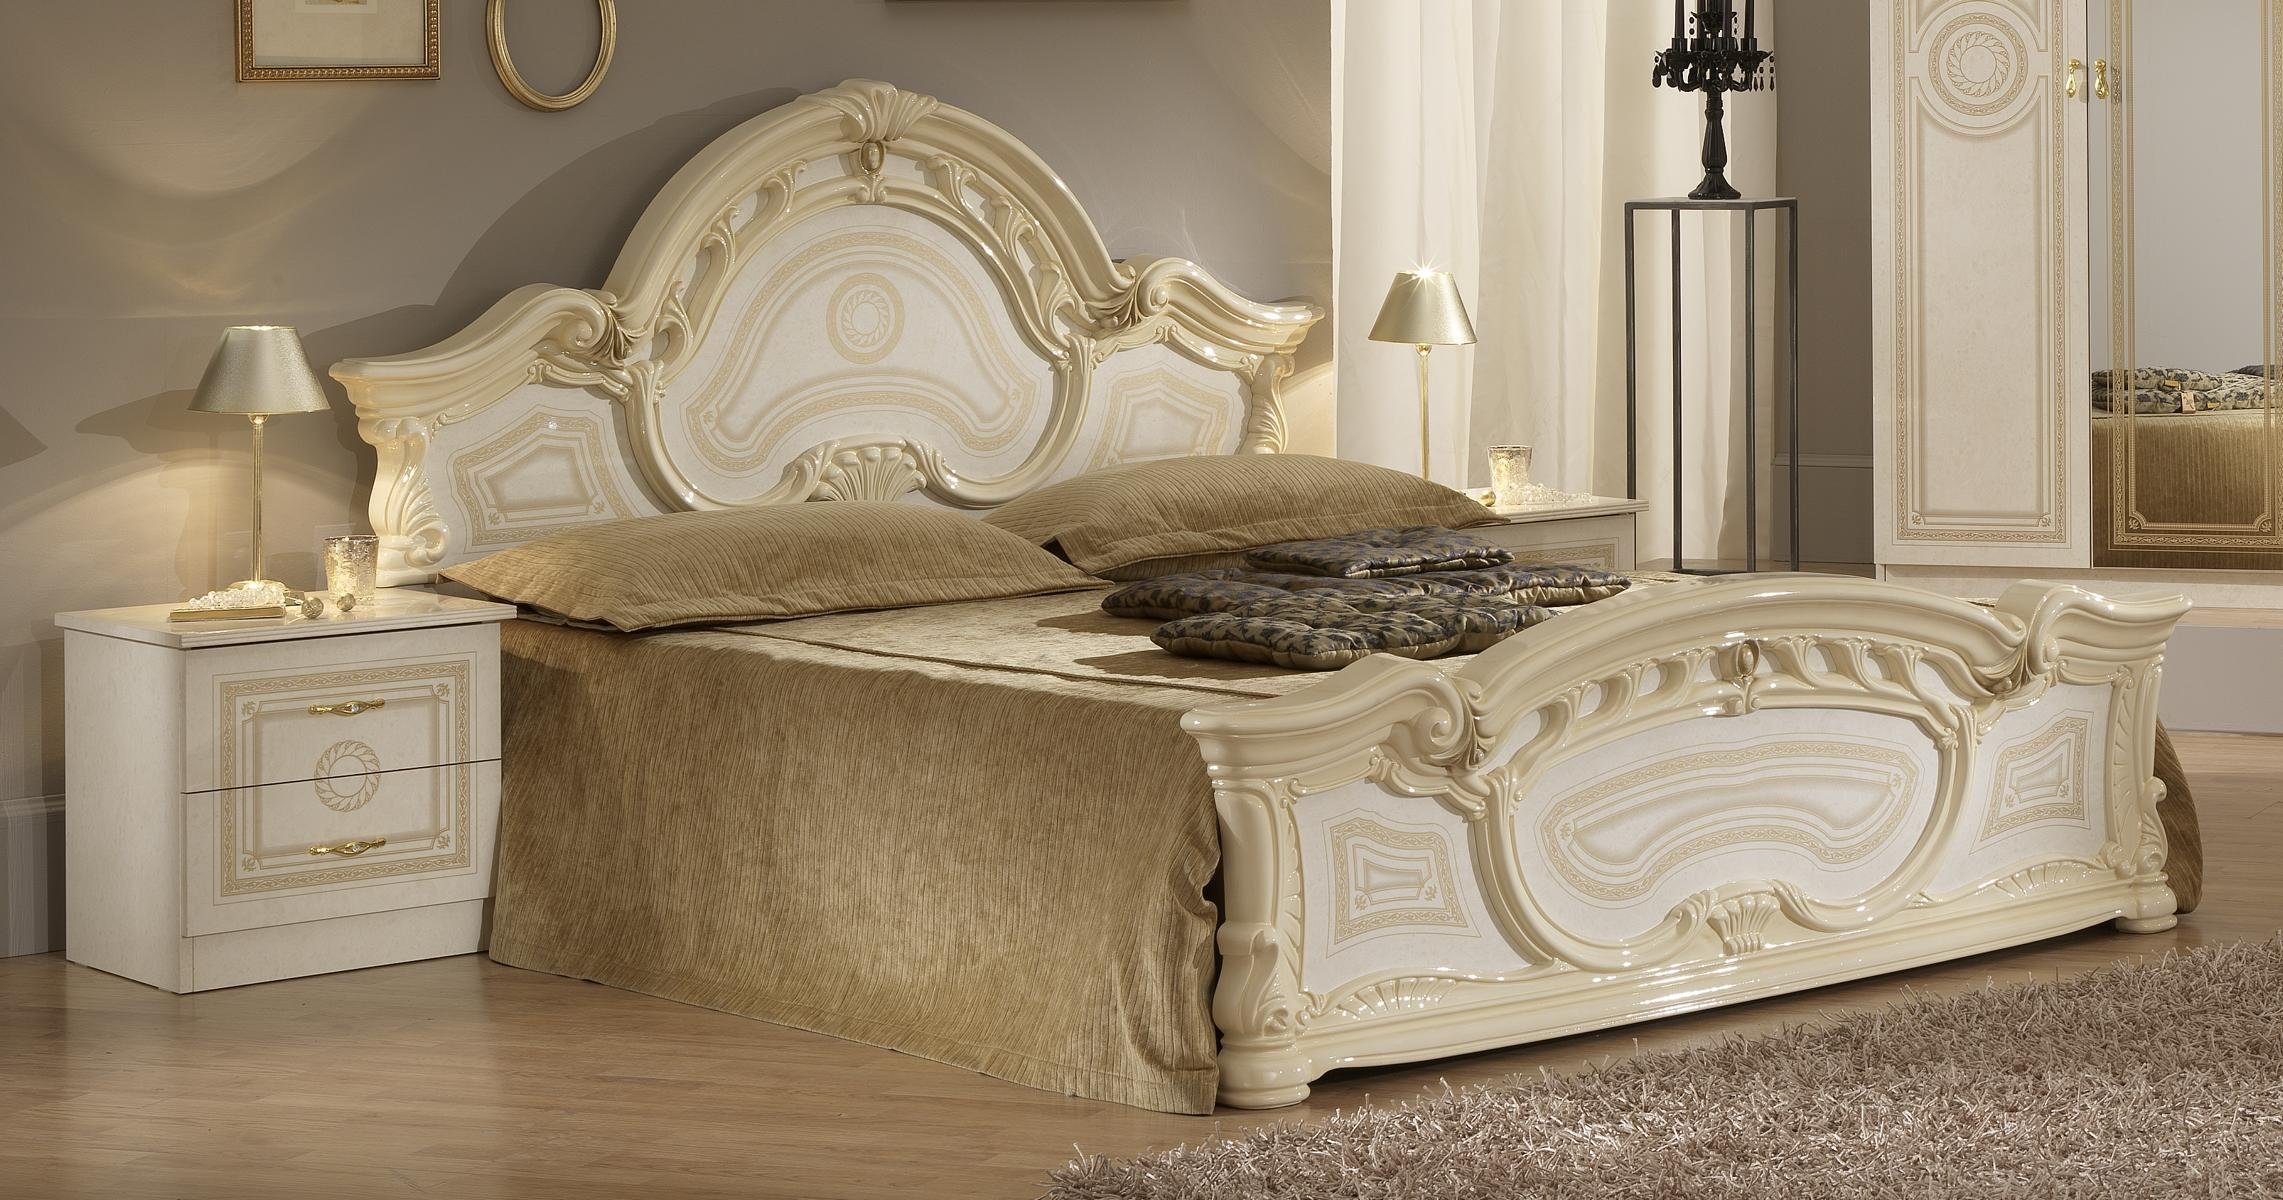 JVmoebel Bett Luxus Bett Hochwertiges Polster Betten Design Doppel